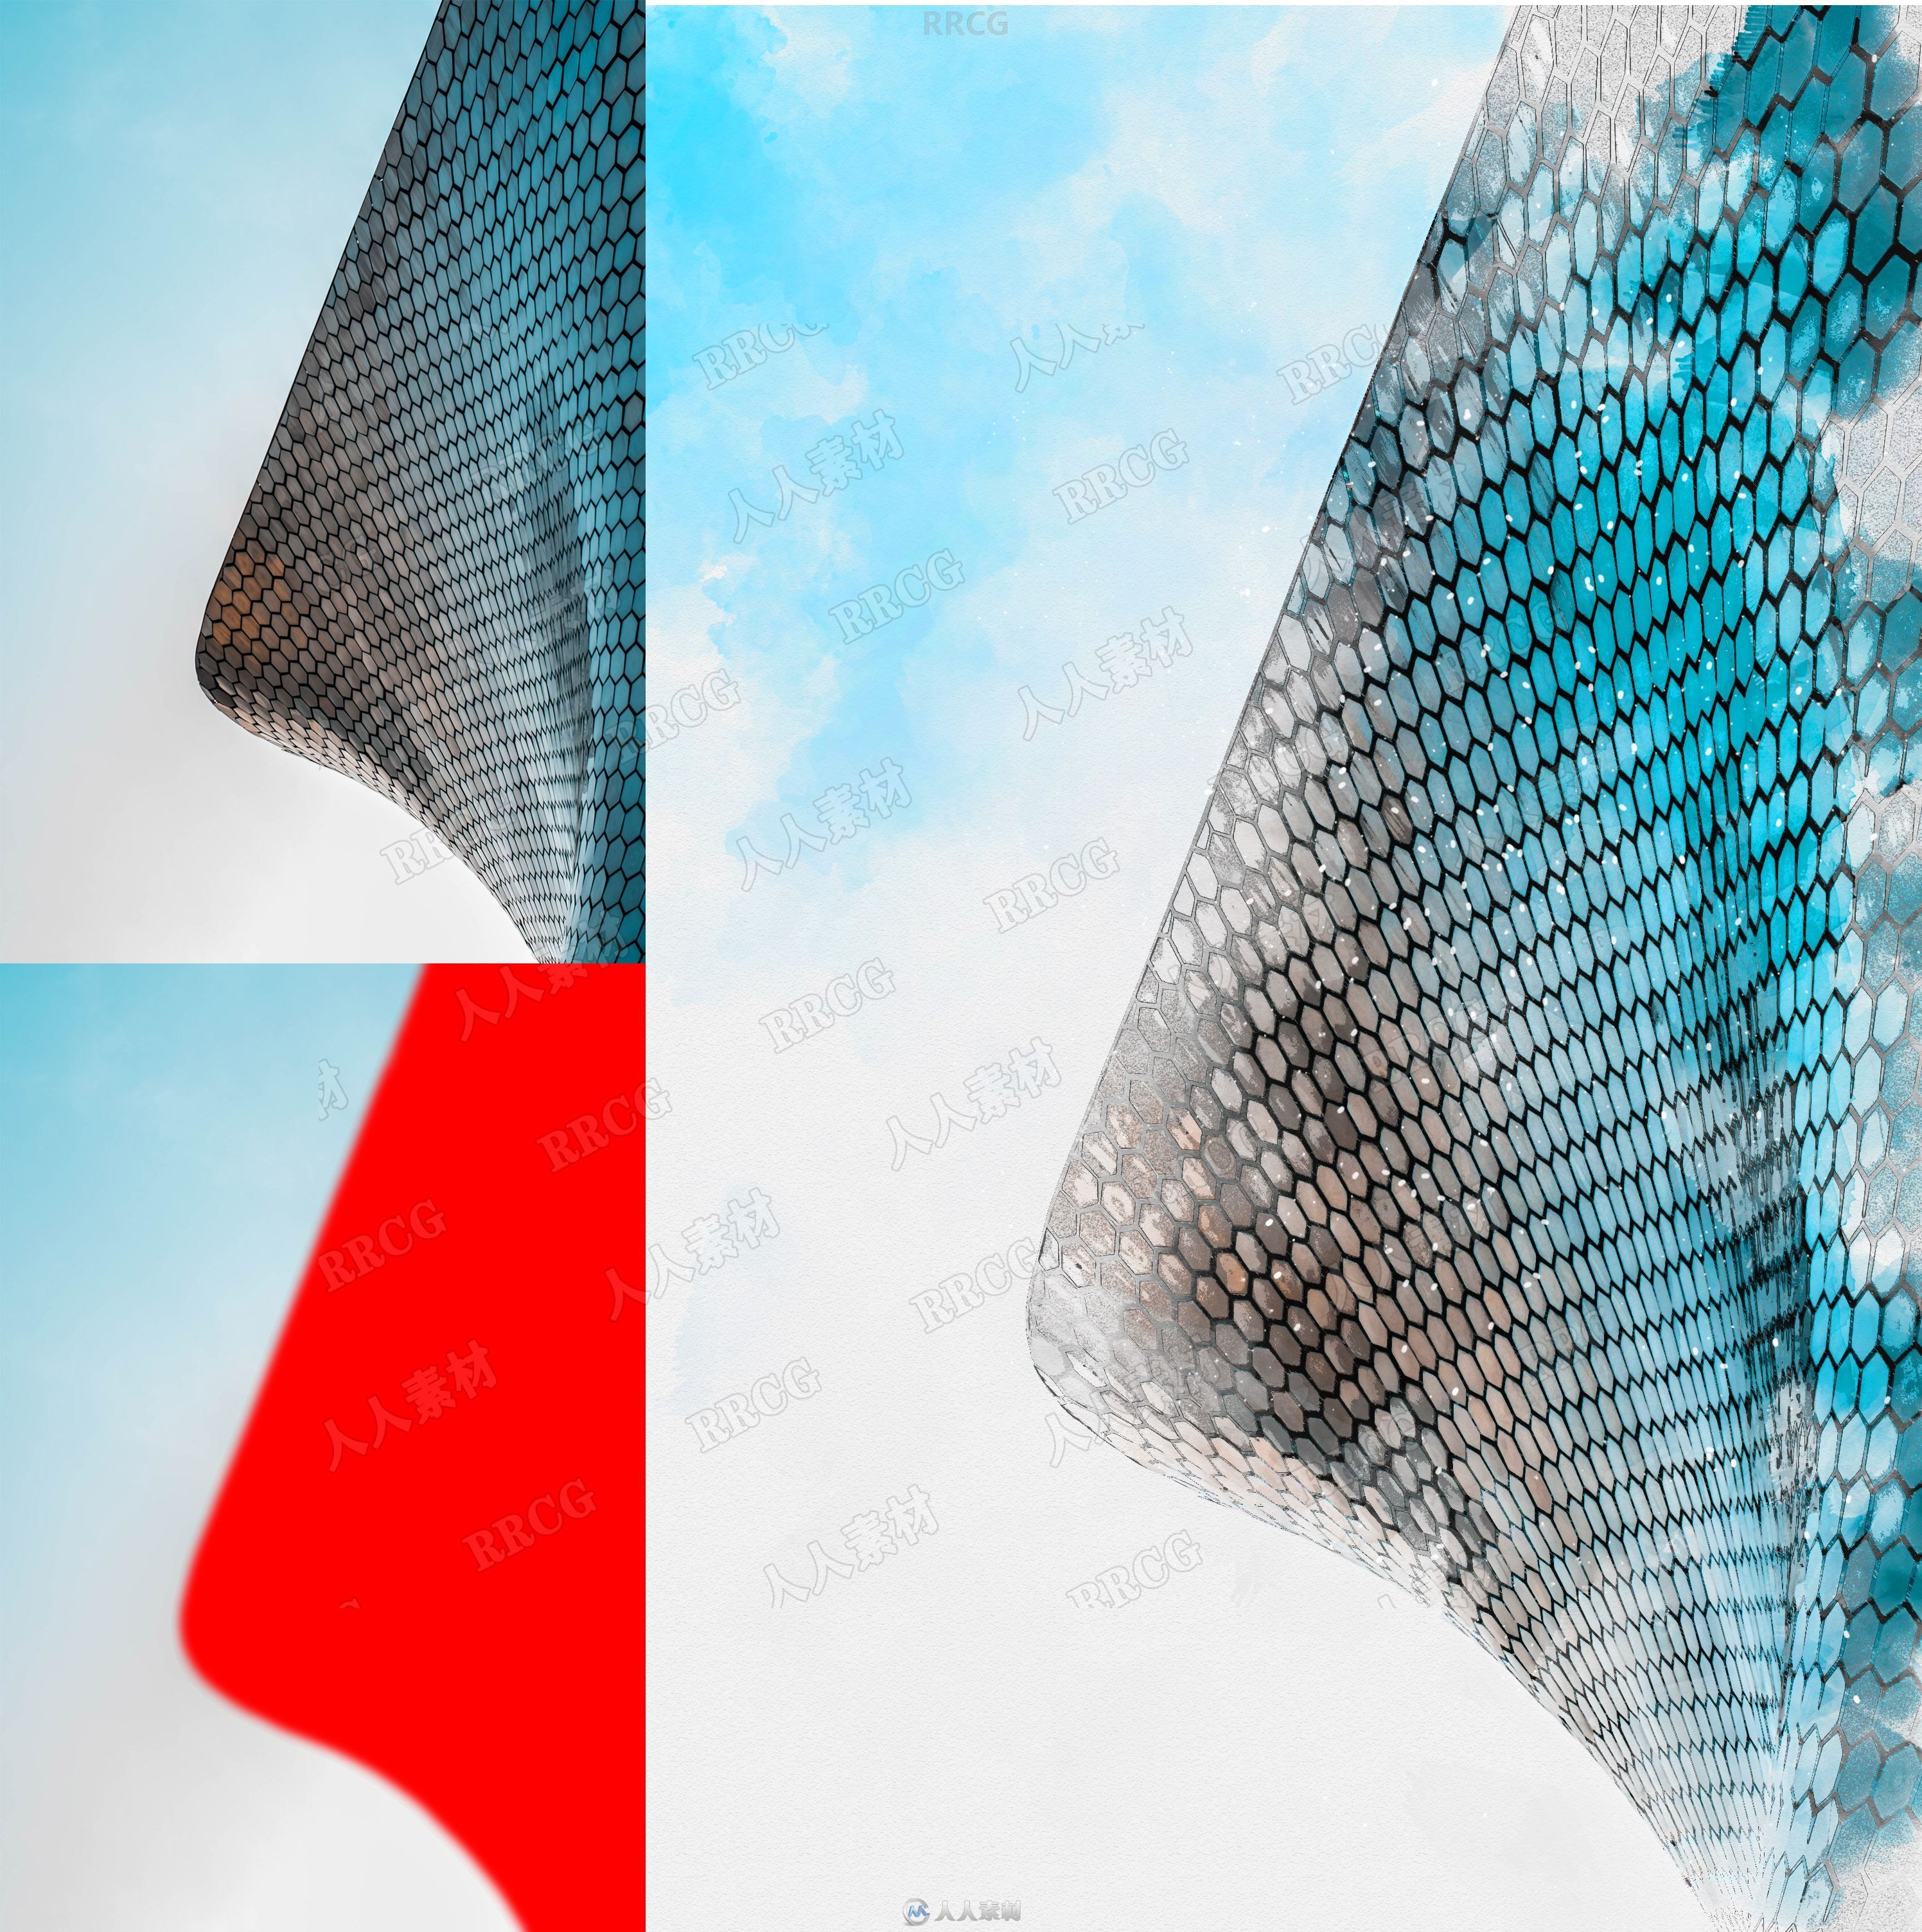 逼真写实现代建筑场景水彩画效果艺术图像处理特效PS动作